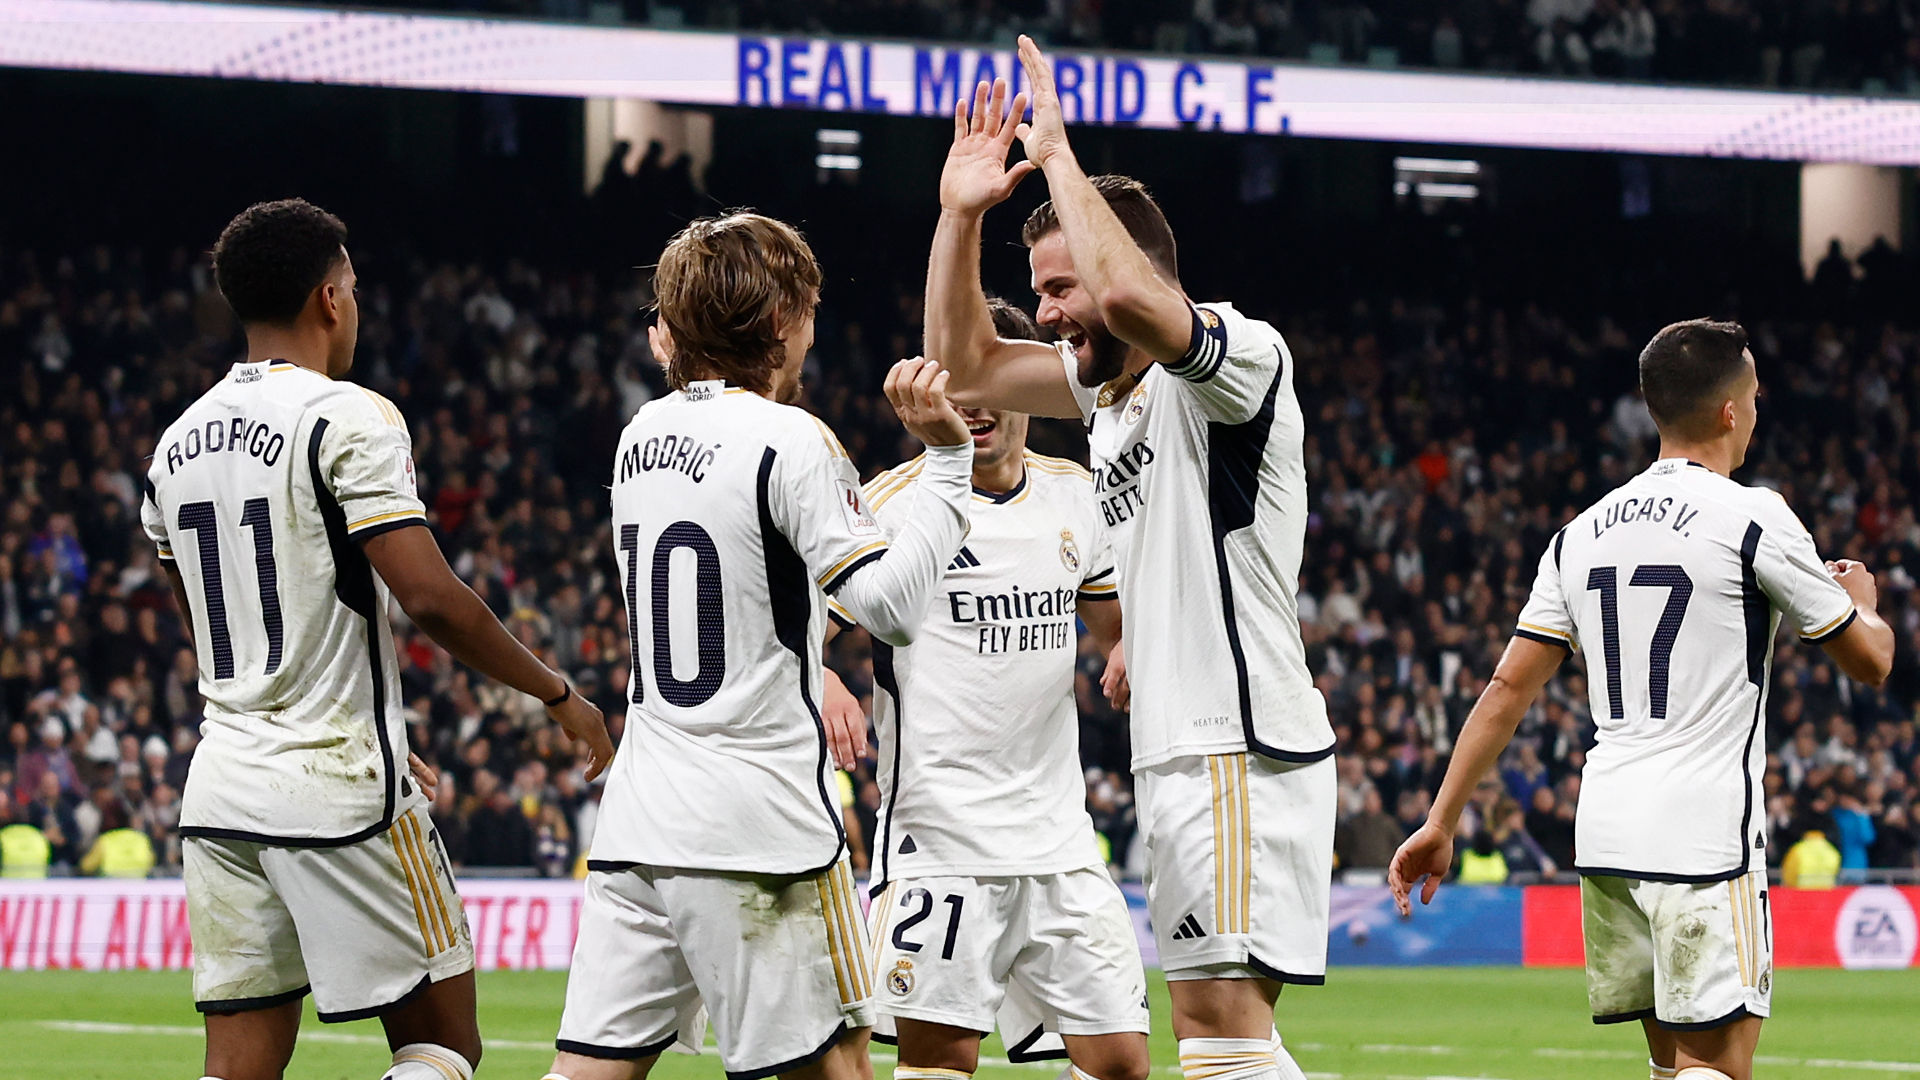 Villarreal-Real Madrid will be played at 7pm on Sunday, 19 May